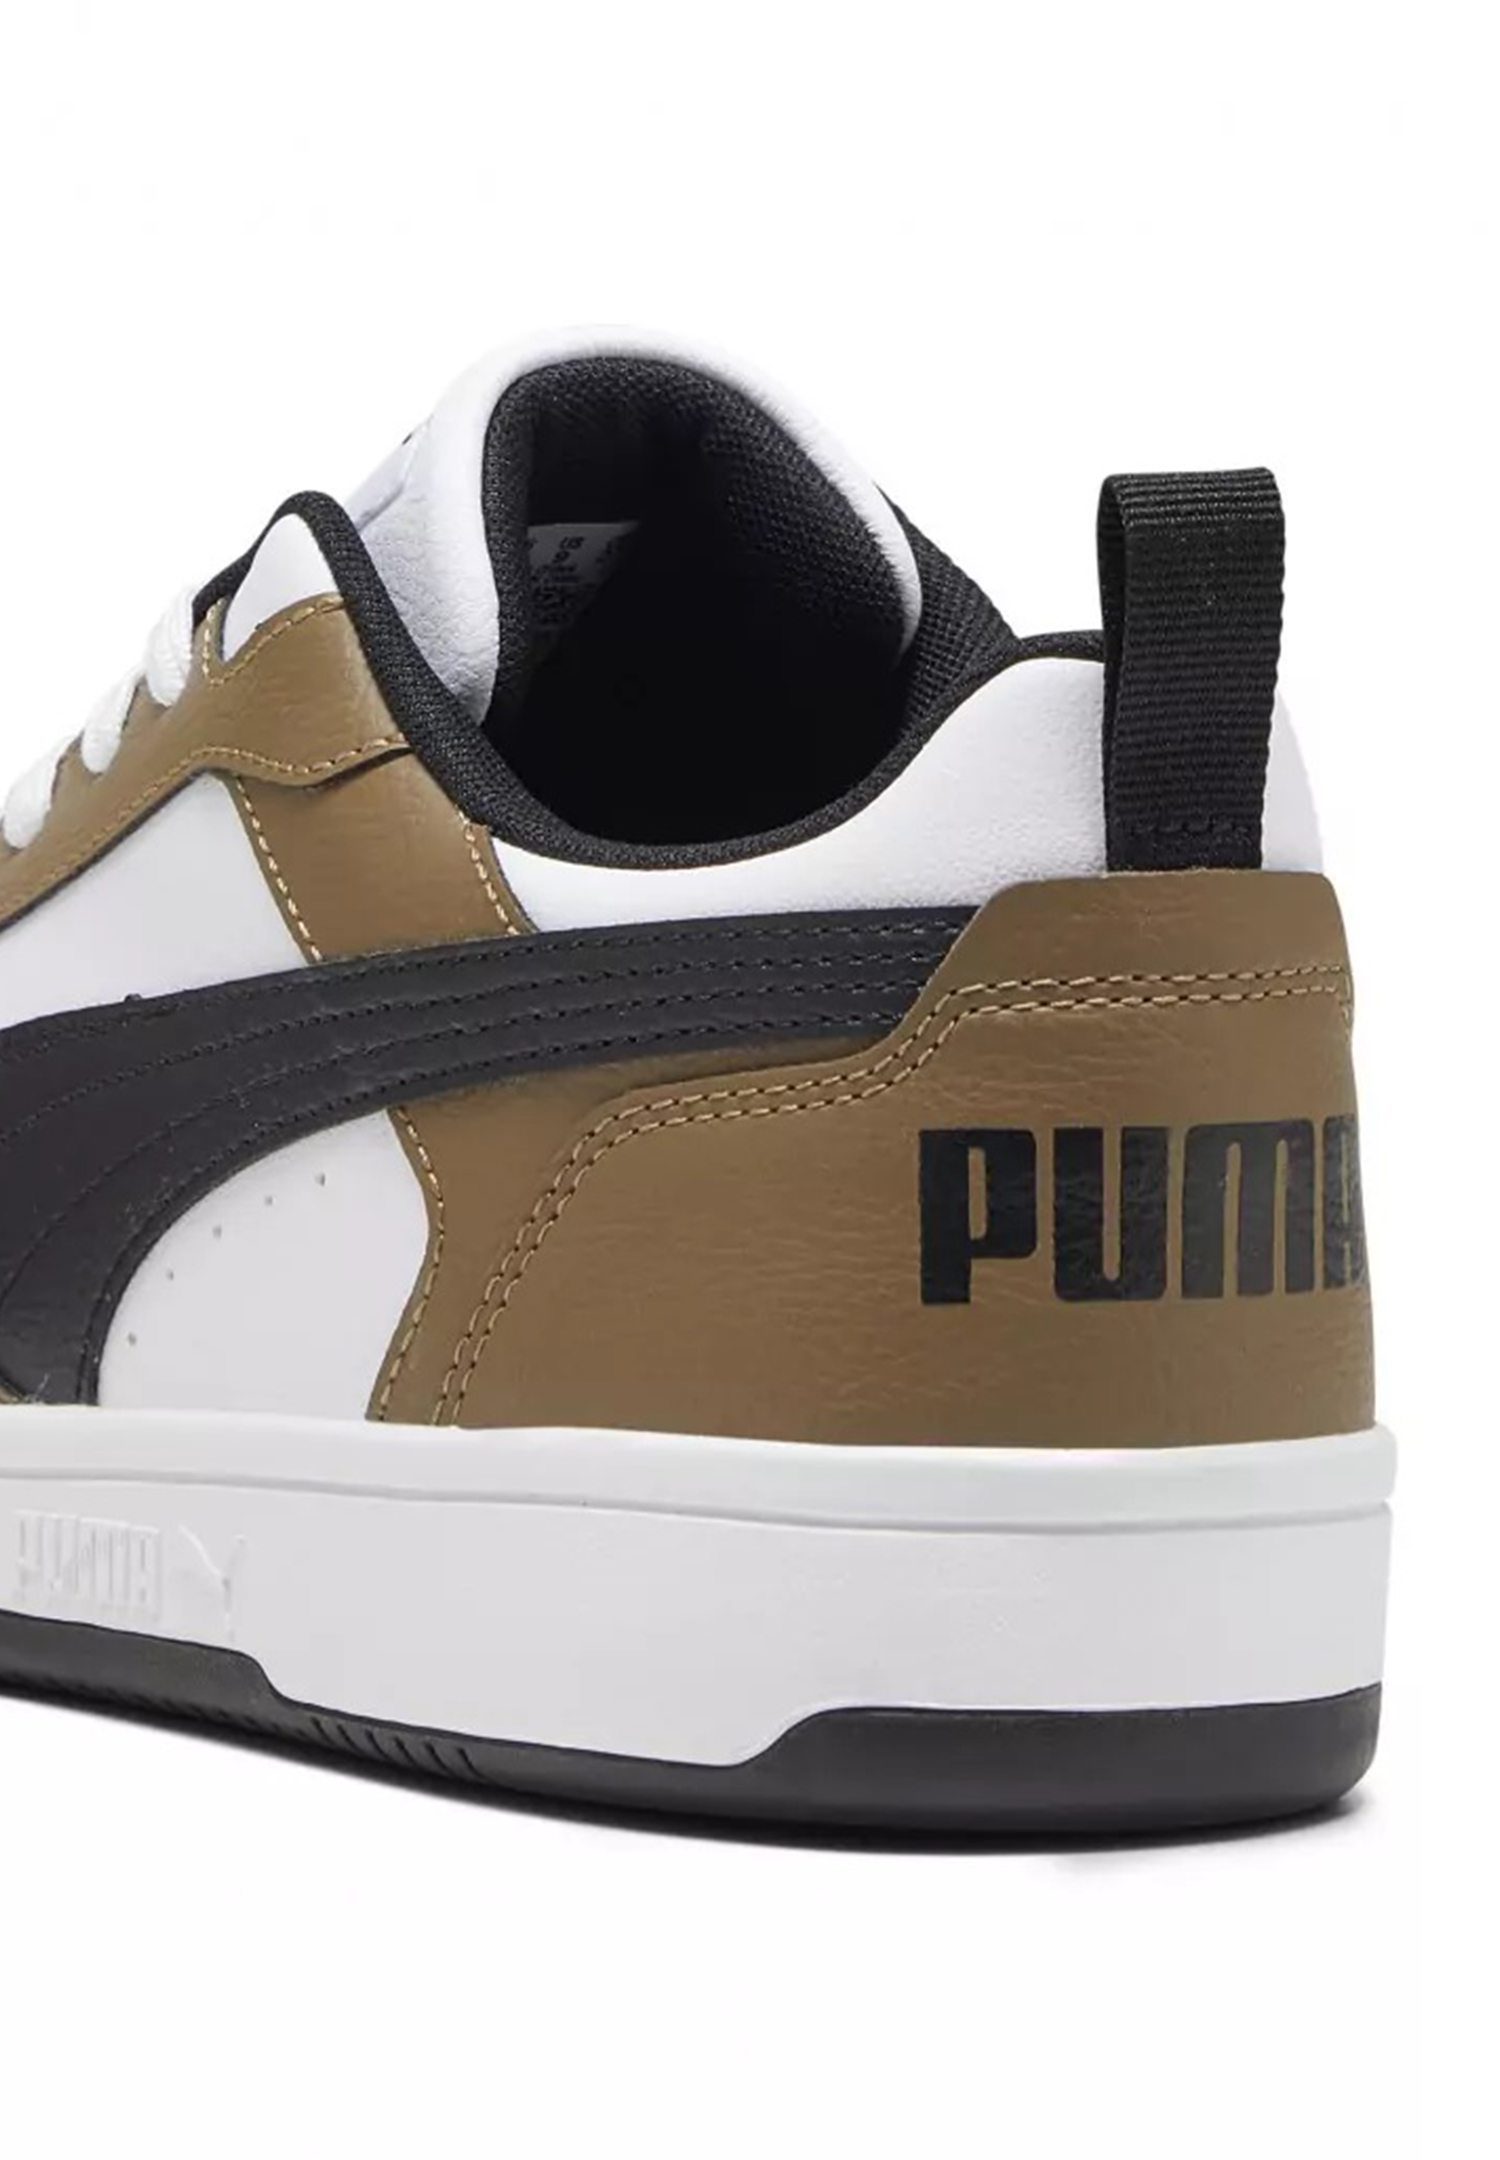 Puma Rebound v6 Low Herren Sneaker Sportschuh 392328 07 weiss/braun